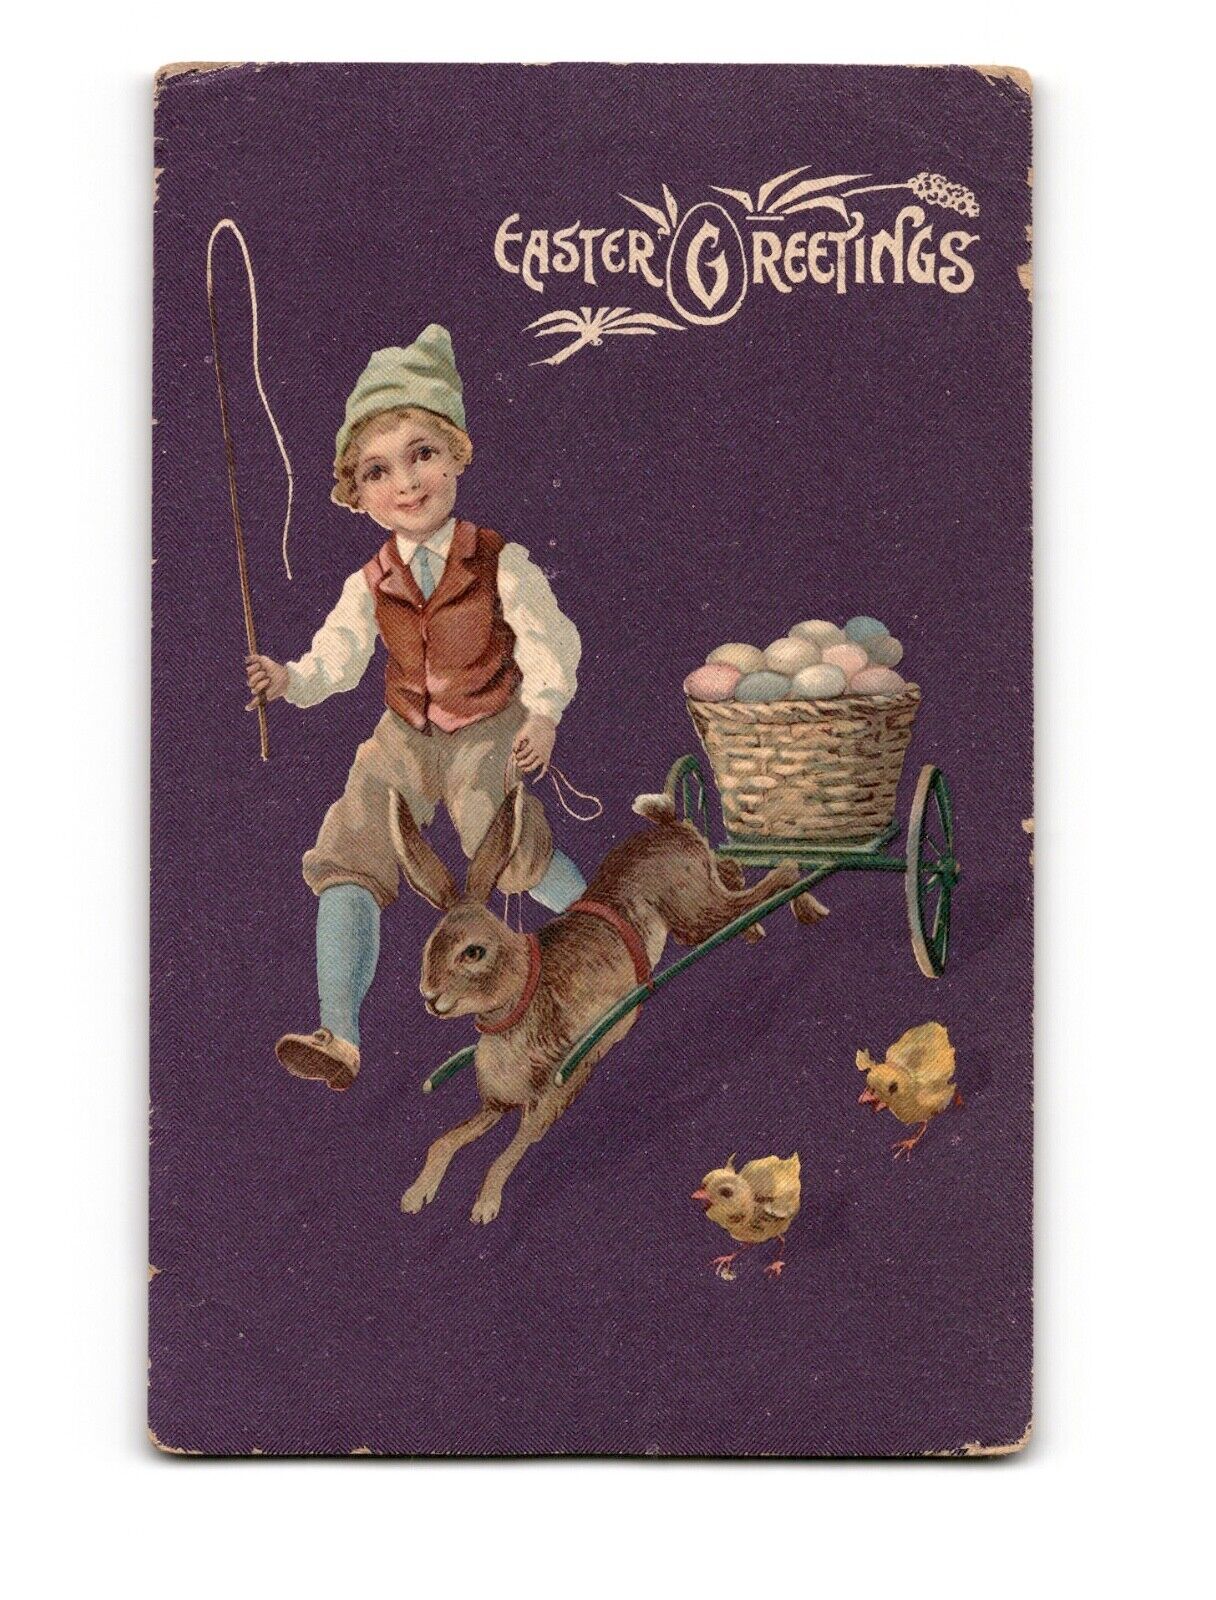 Easter Greetings Vintage Postcard Standard 1900-1940